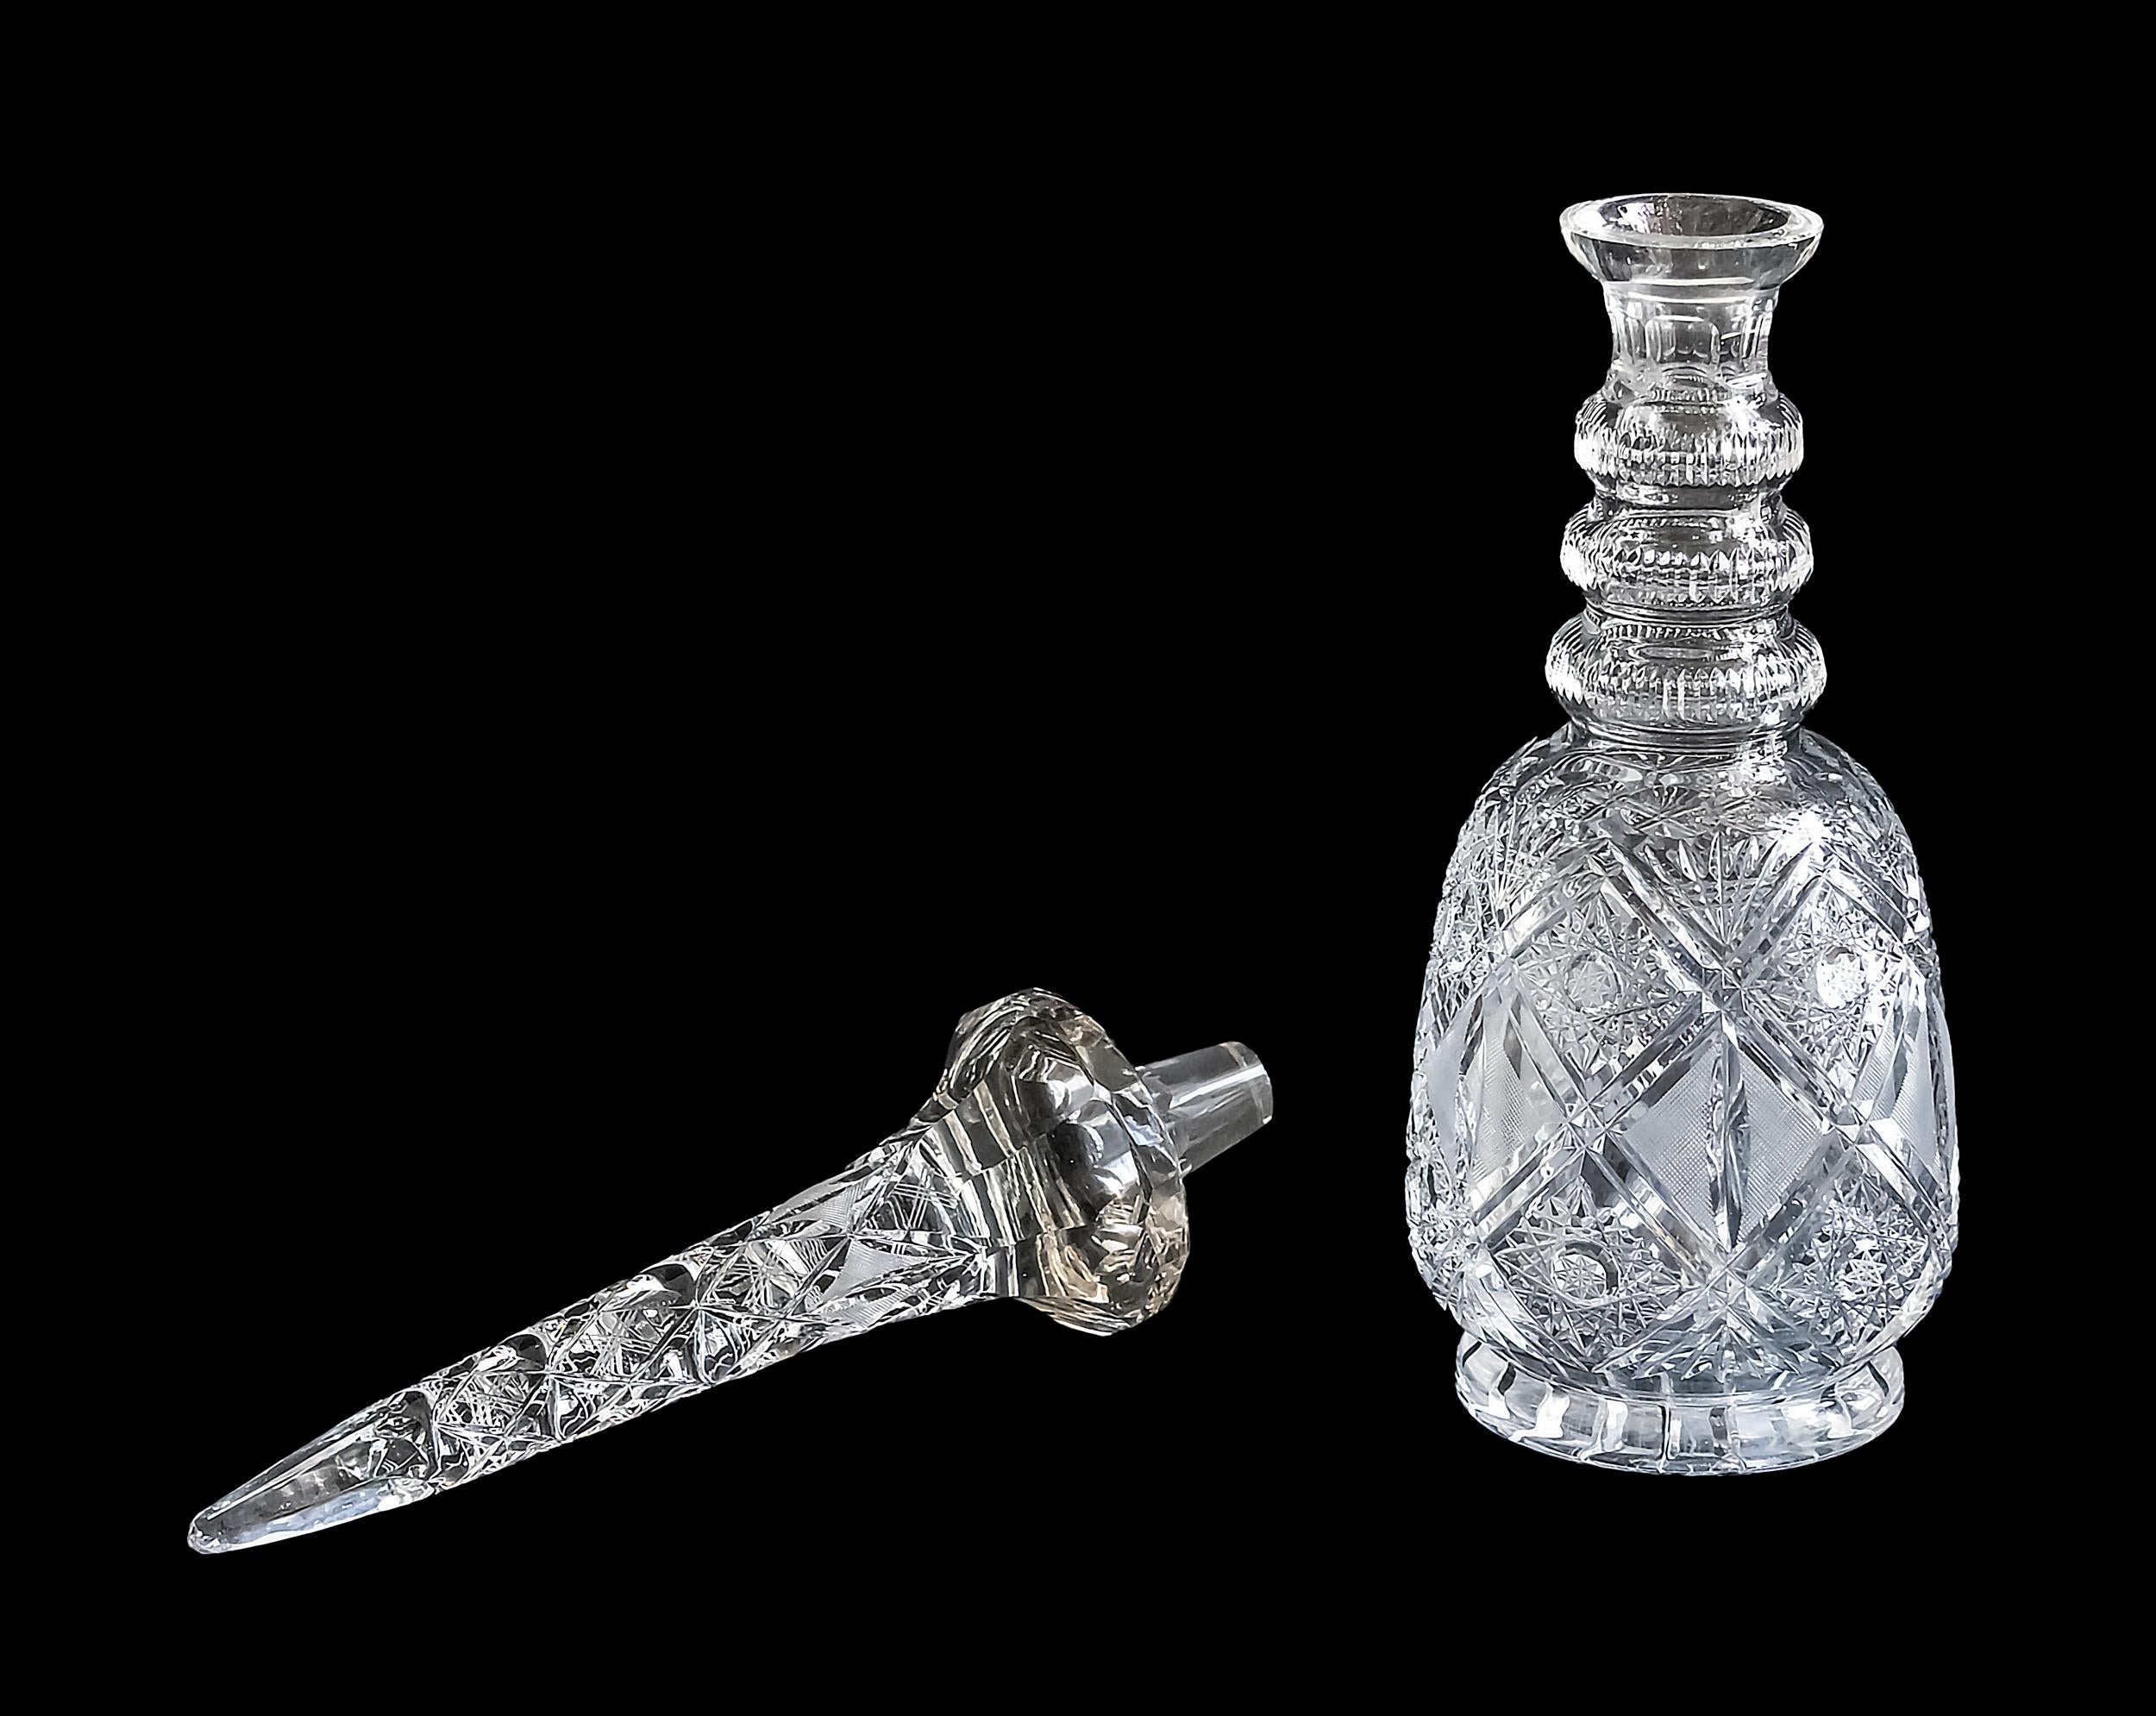 Extra große Karaffe aus handgeschliffenem Kristall im böhmisch-persischen Stil.
Ausgezeichneter Vintage-Zustand.